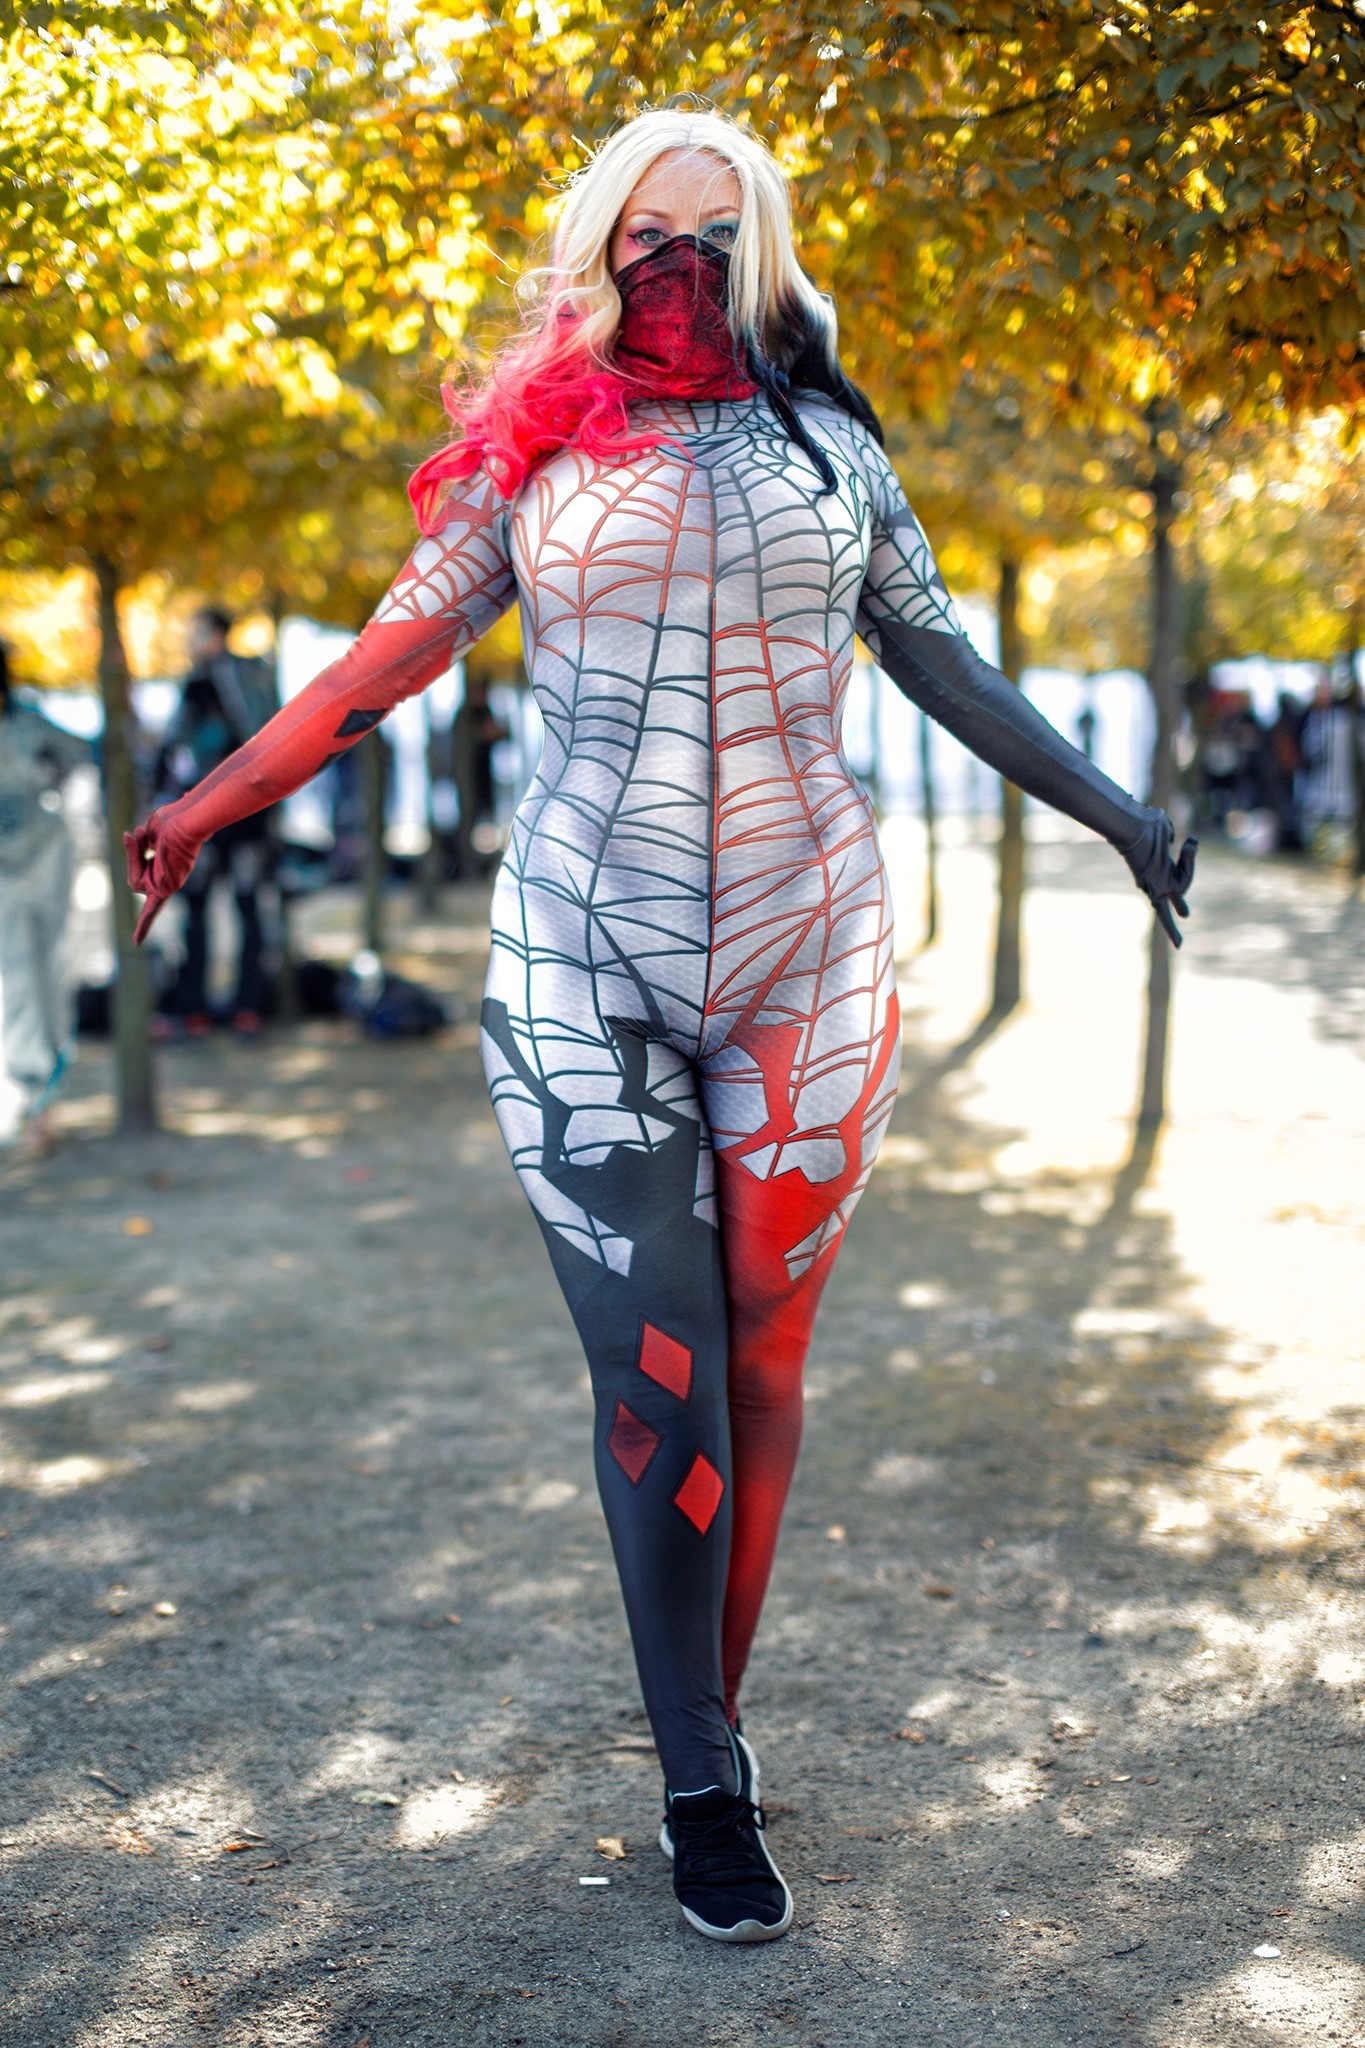 SpiderMan Spider Gwen cosplay photoshoot